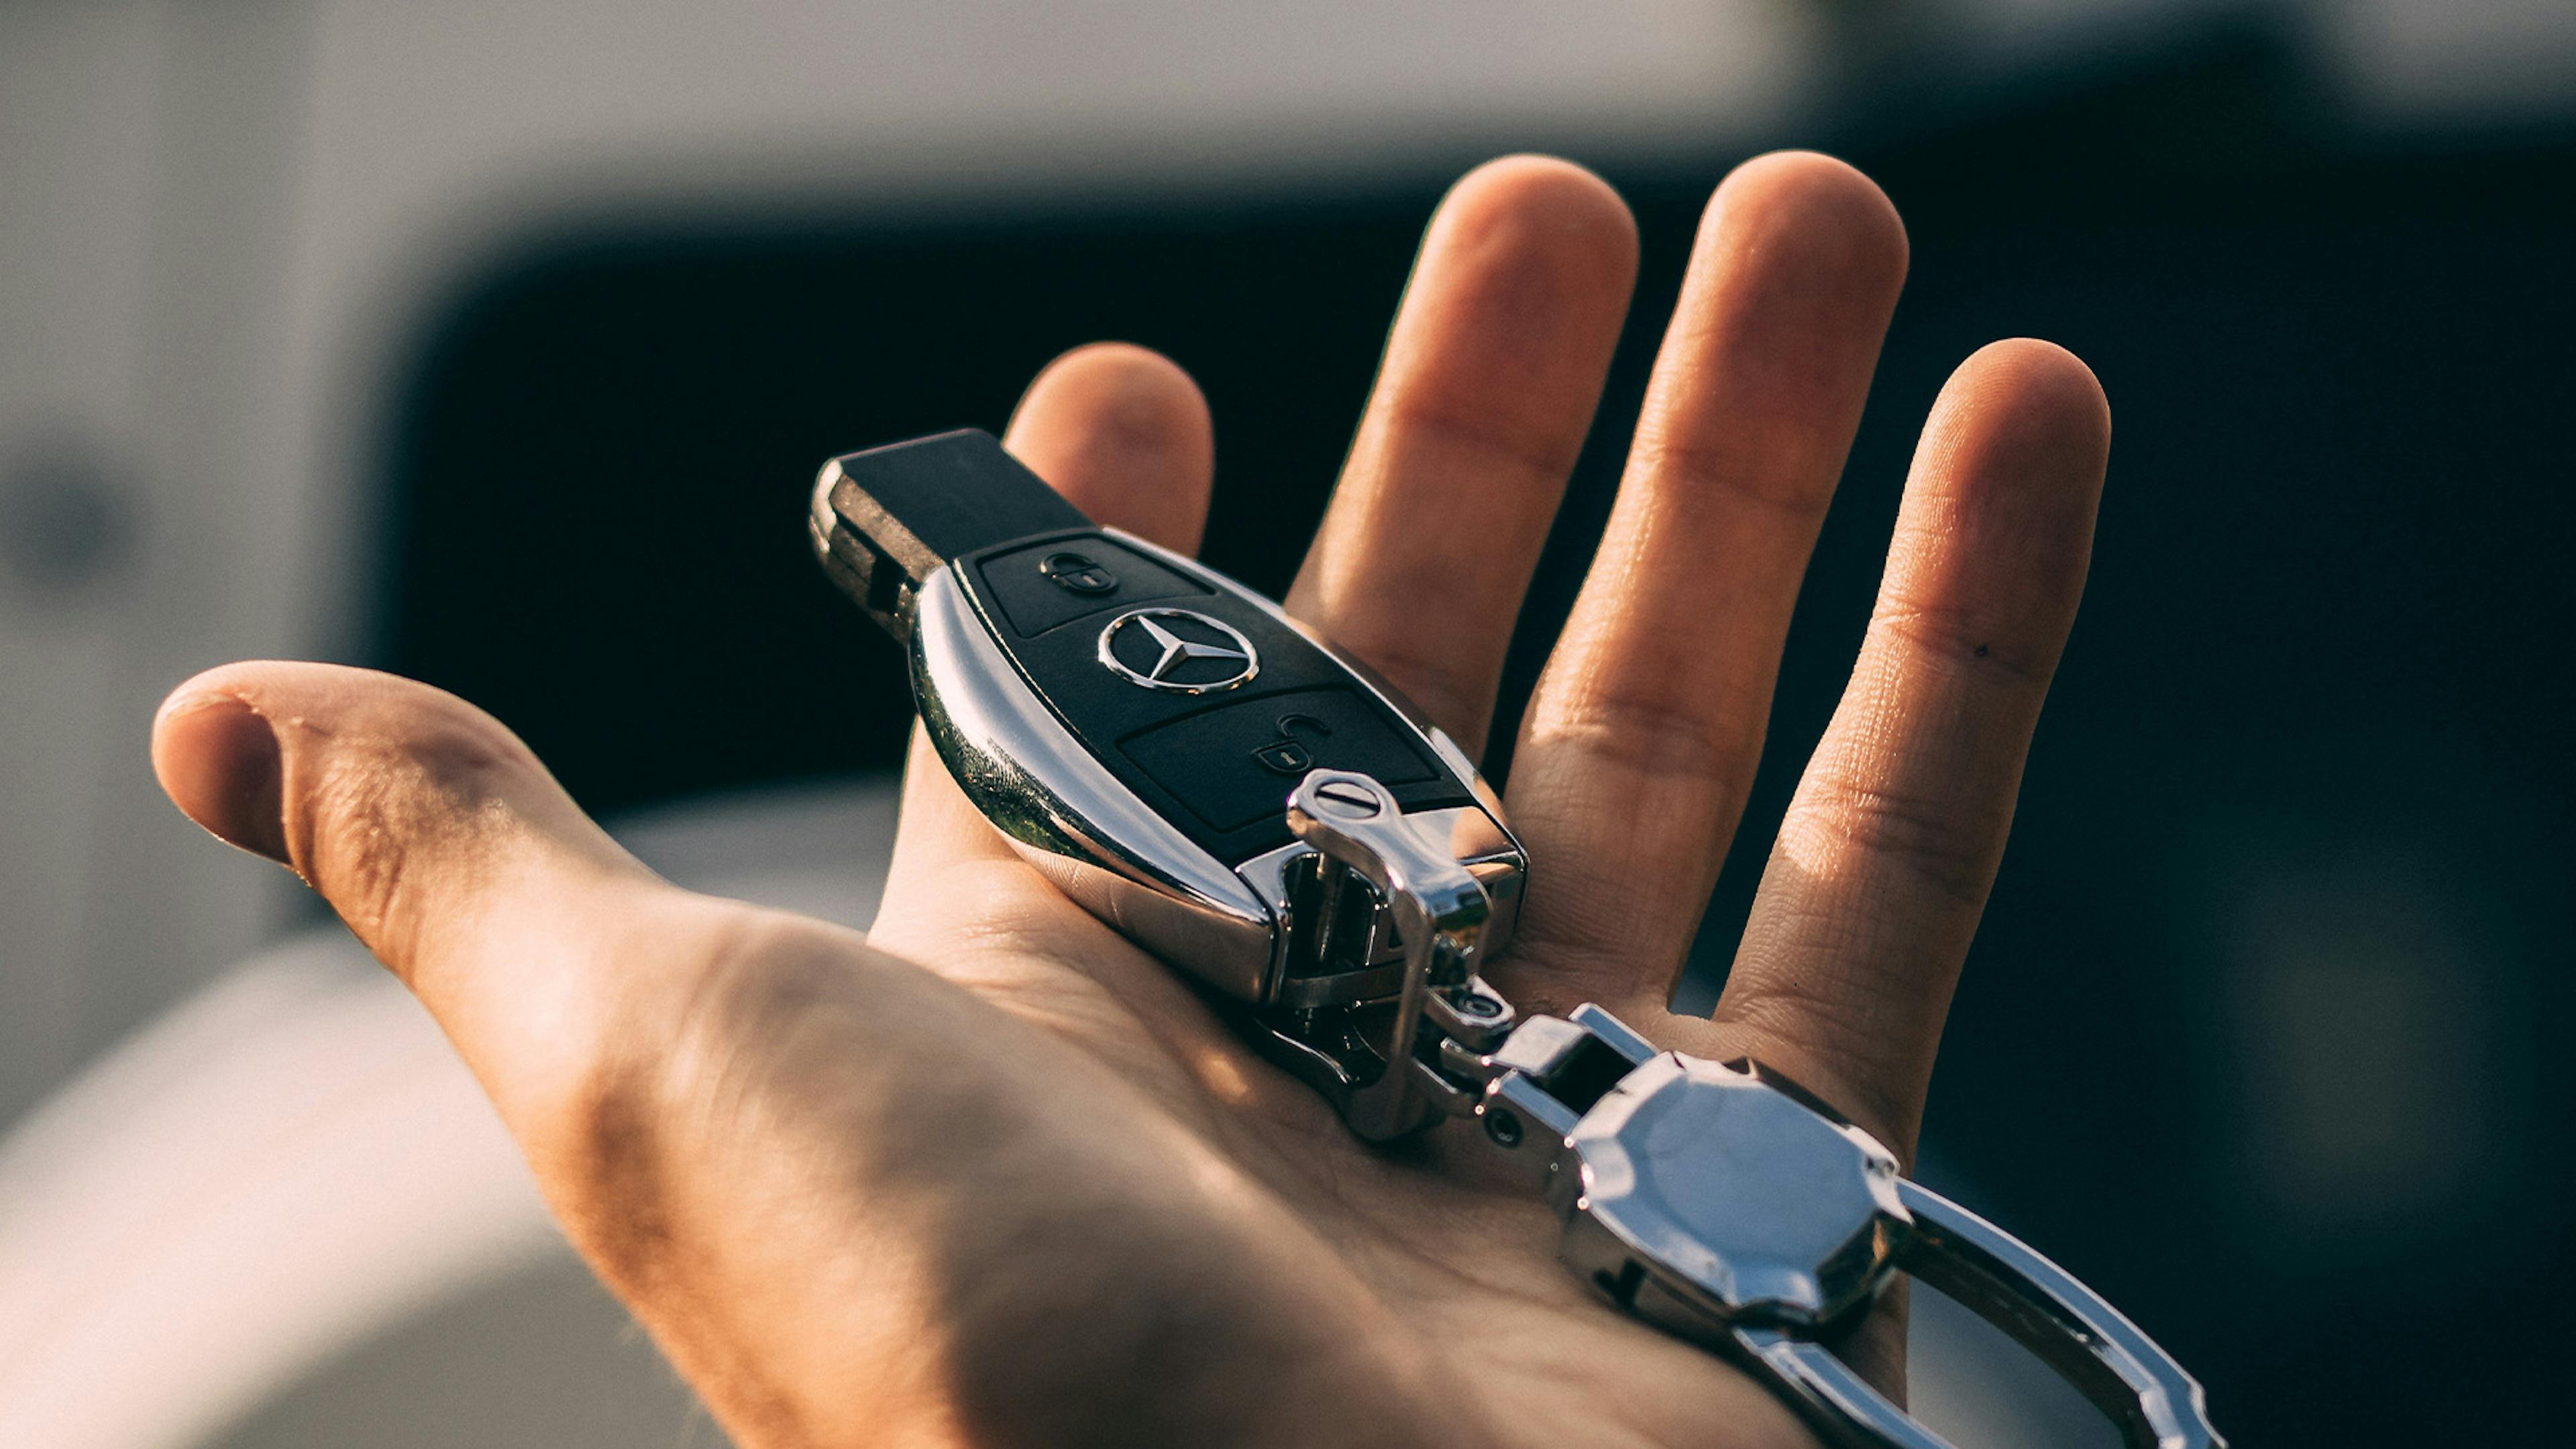 Nahaufnahme einer Hand, die einen Autoschlüssel der Marke Mercedes-Benz hält